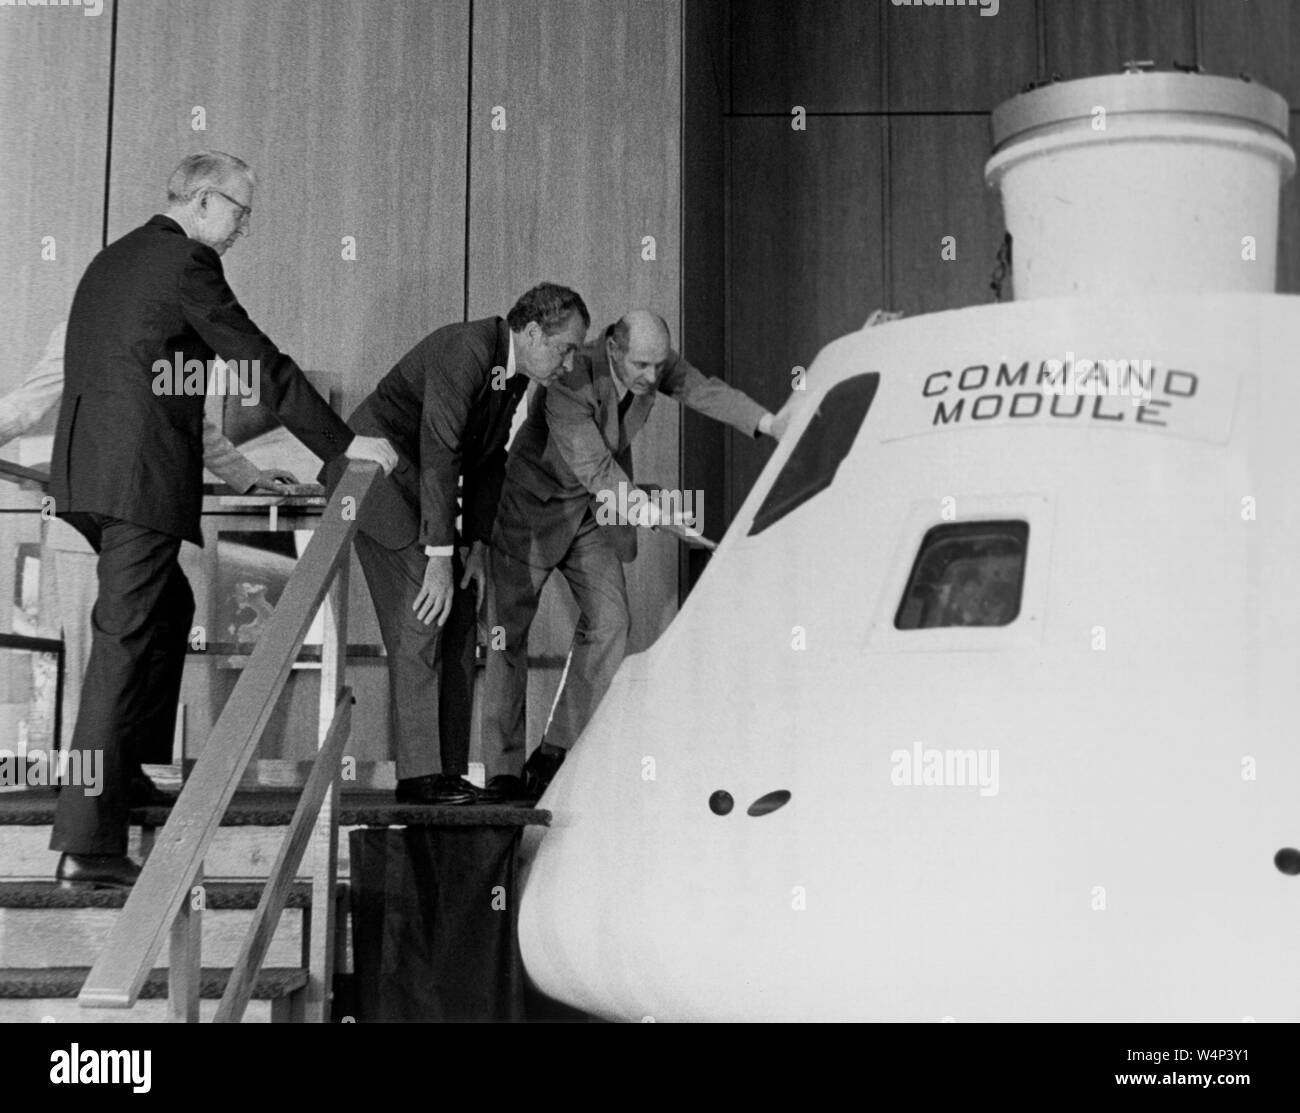 Astronauta P Thomas Stafford e il dottor James C Fletcher forniscono un briefing sulla Apollo modulo di comando per il presidente Richard Nixon M, aprile 1974. Immagine cortesia Nazionale Aeronautica e Spaziale Administration (NASA). () Foto Stock